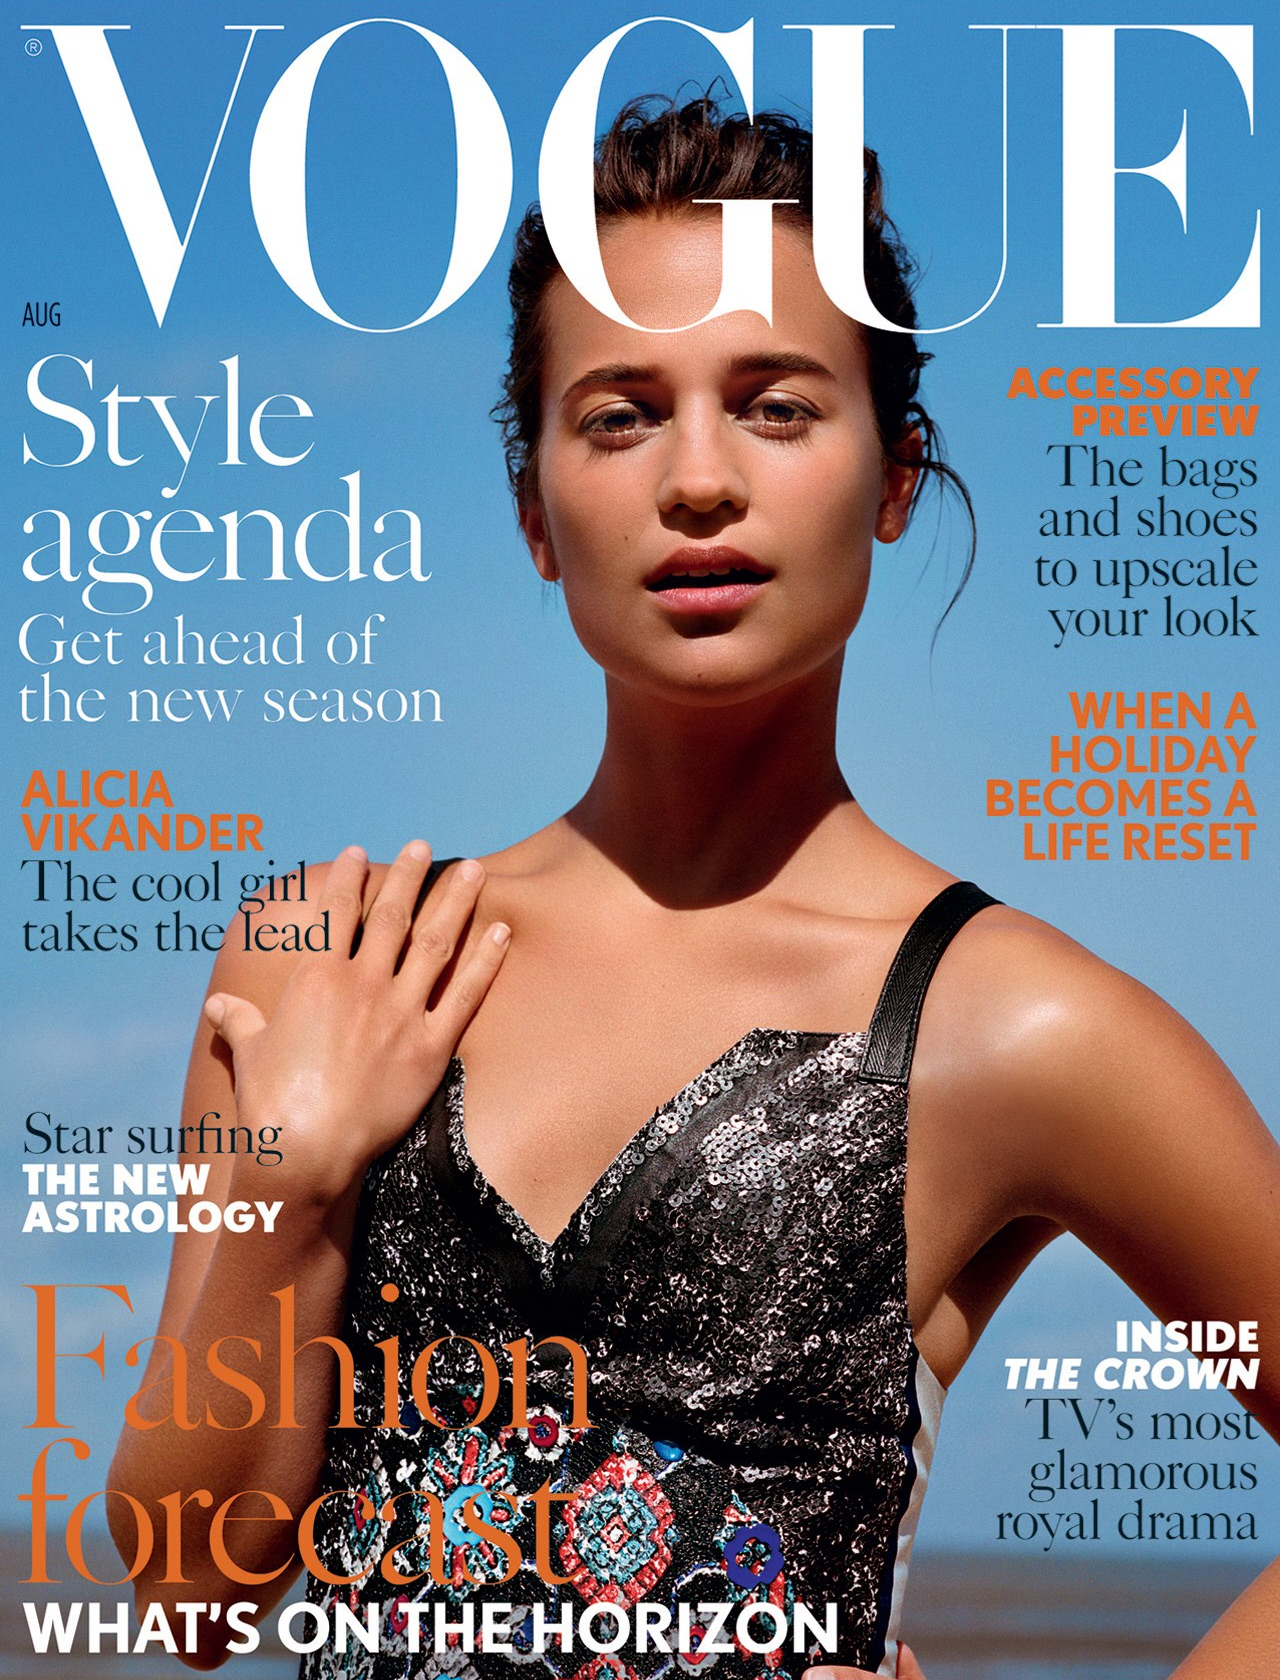 Алисия Викандер говорит с Майклом Фассбендером, Мэттом Дэймоном и другими с Vogue UK